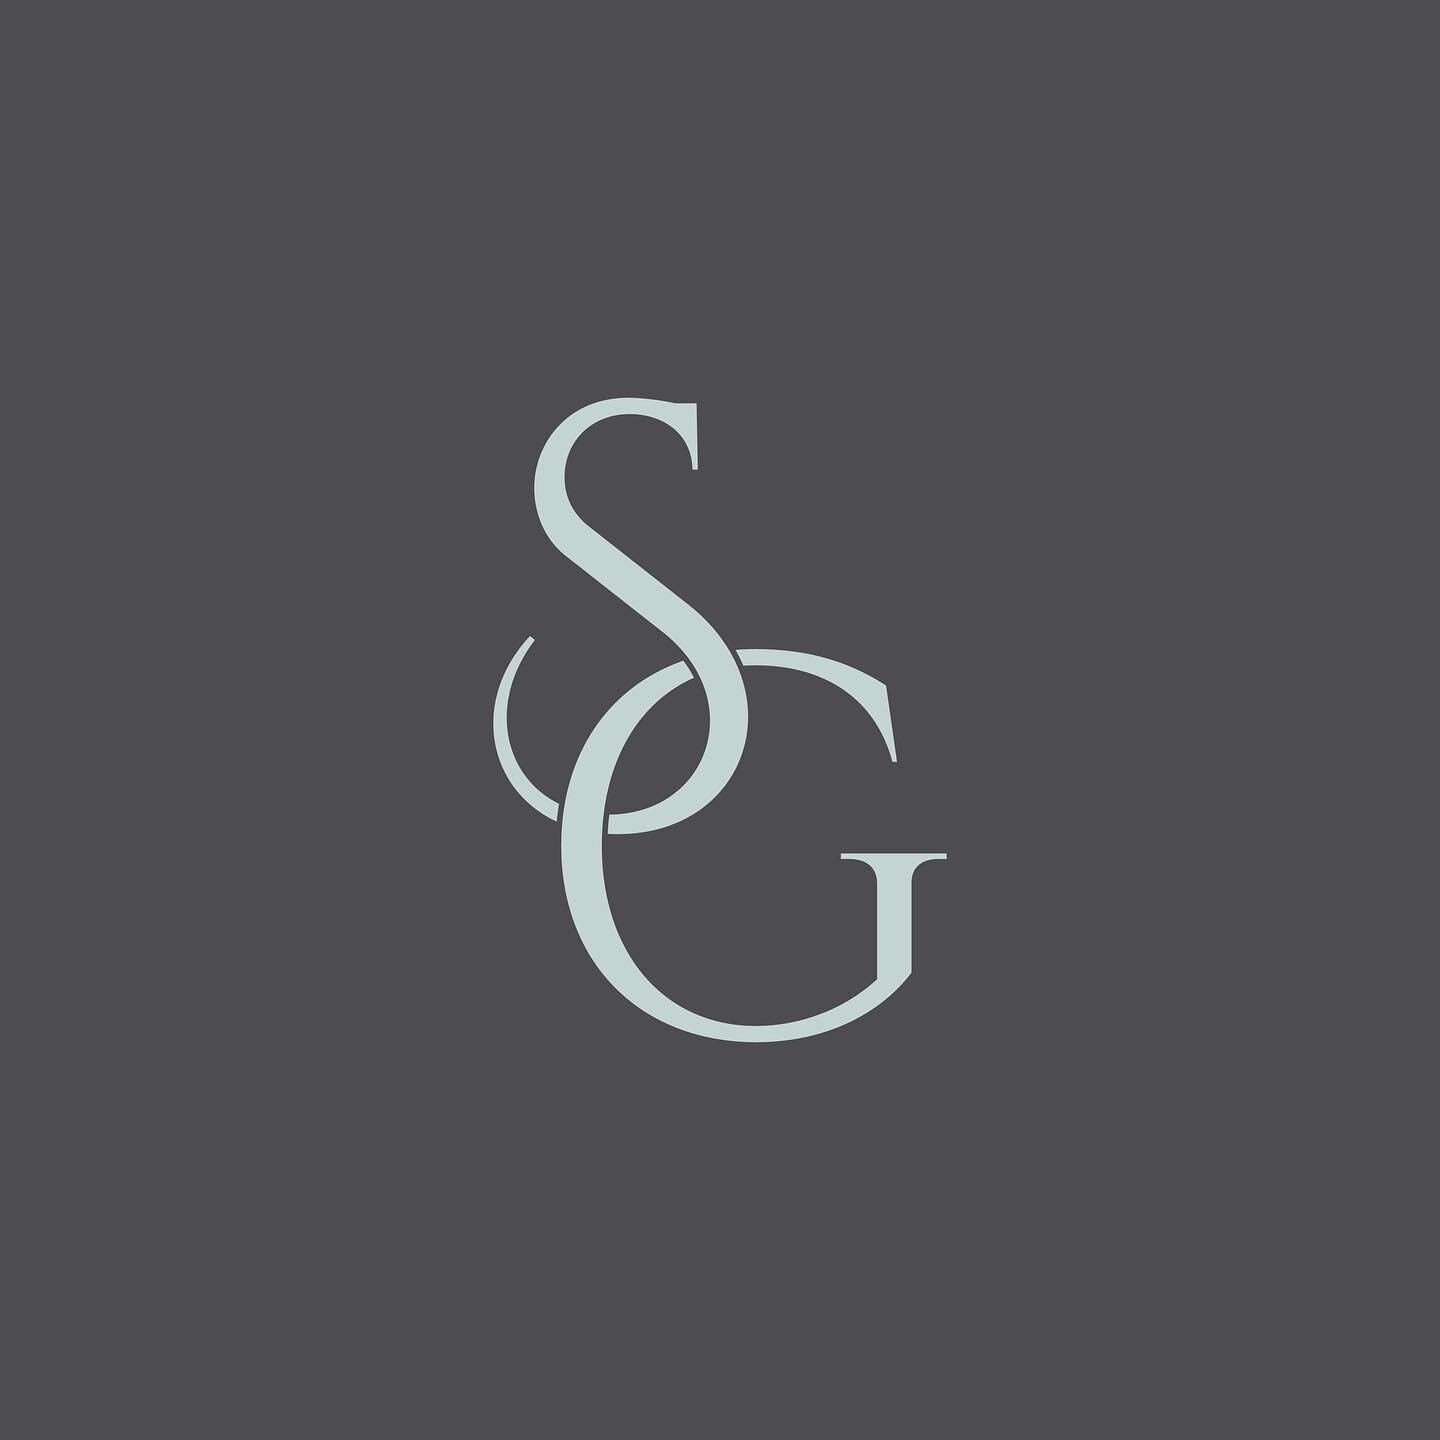 Branding for Stonehouse Gardens - Monogram